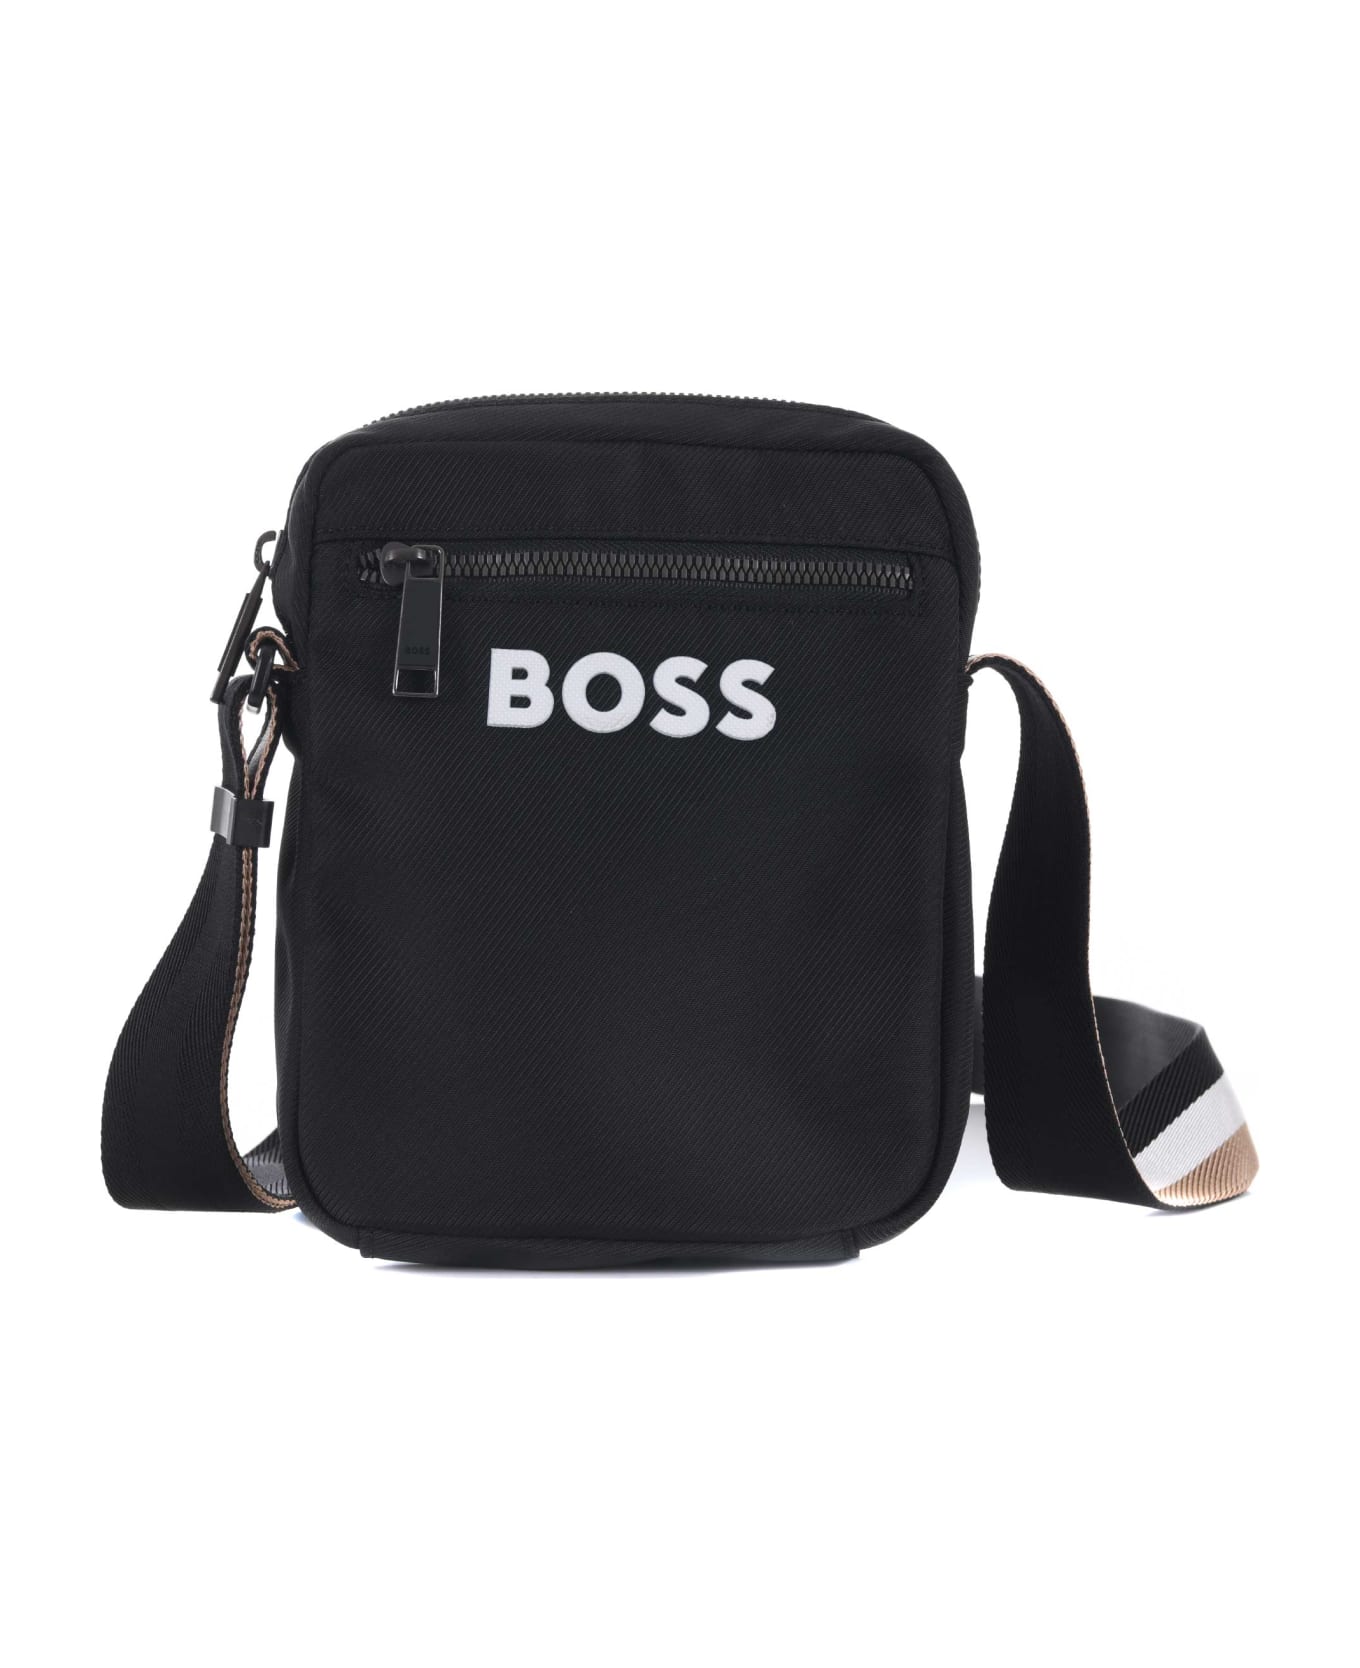 Hugo Boss Boss Shoulder Bag - Nero ショルダーバッグ